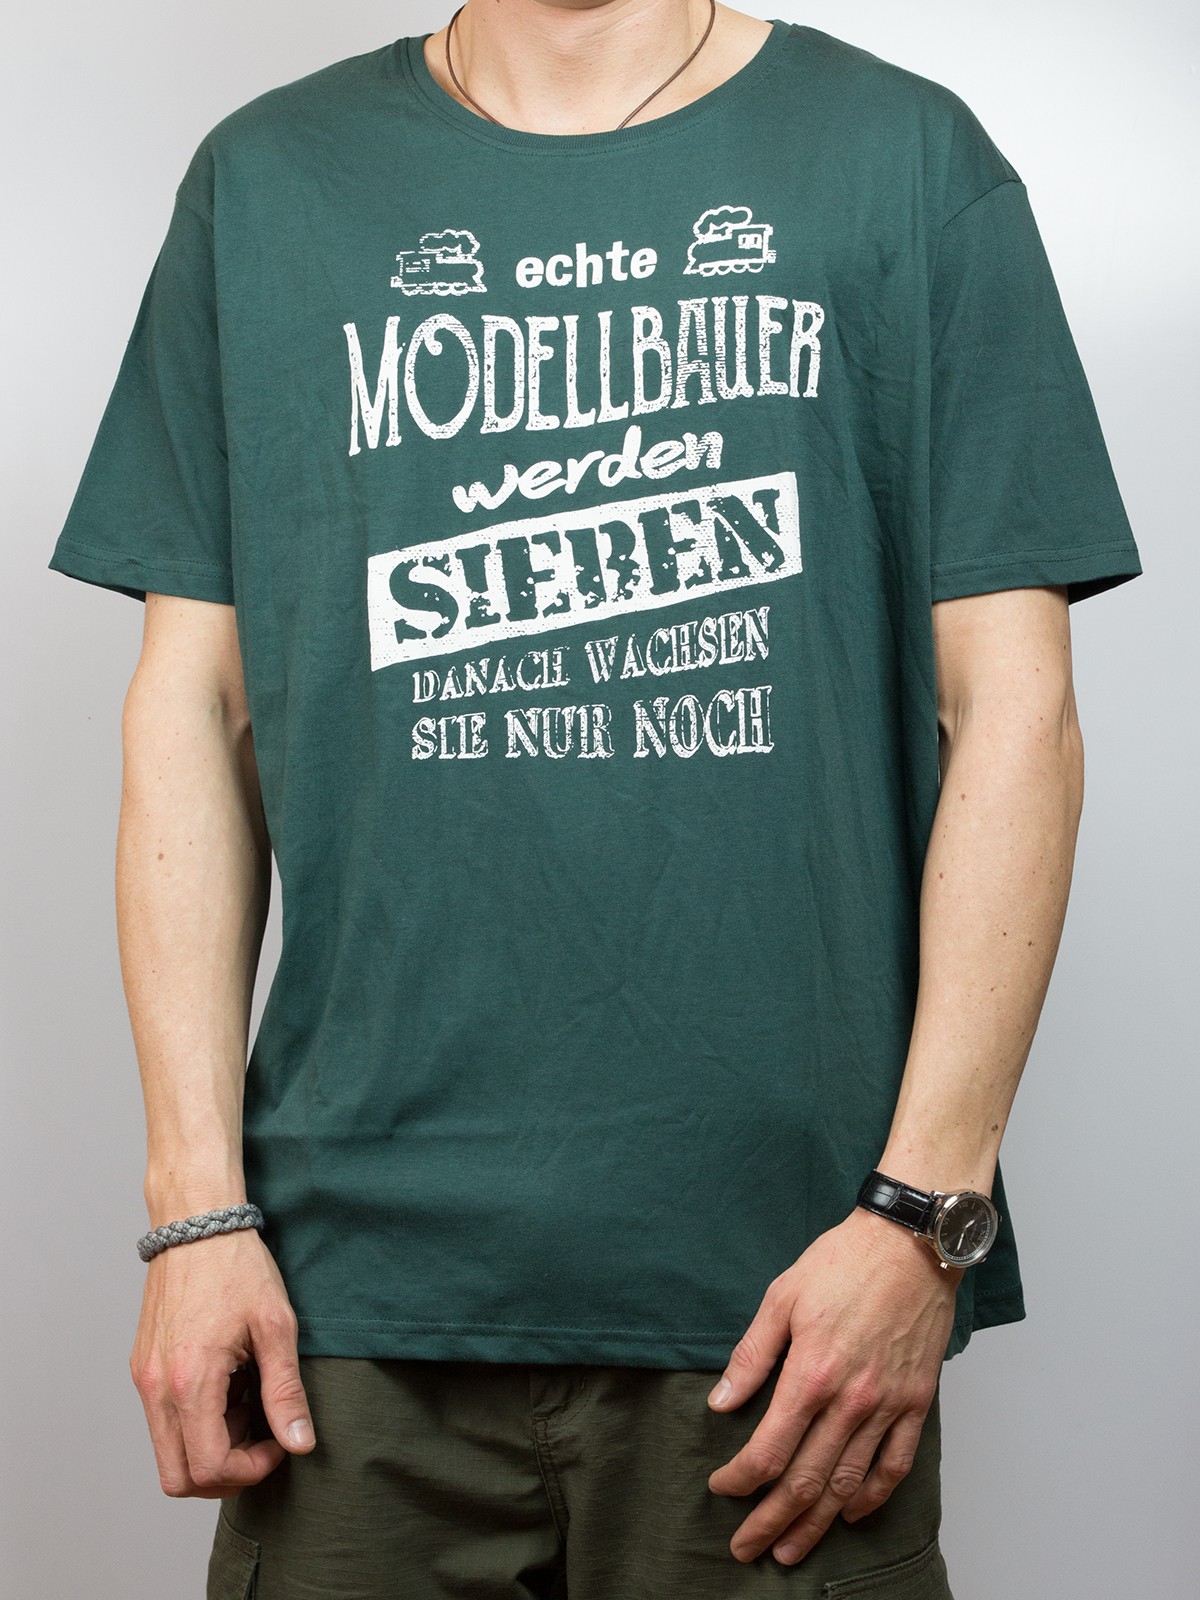 T-Shirt - echte Modellbauer werden sieben...